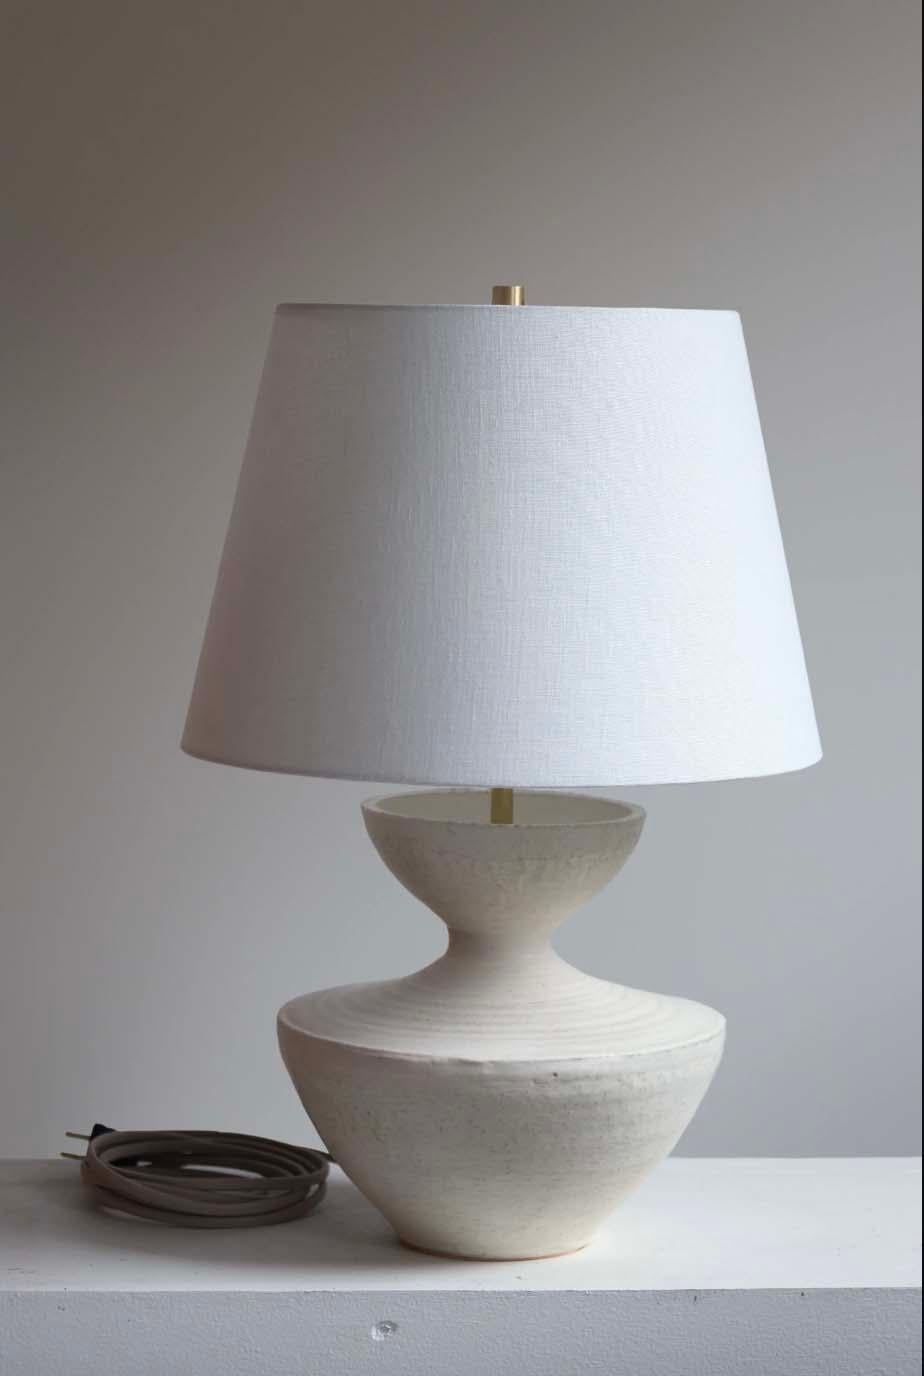 La lampe Tauria est une poterie de studio faite à la main par l'artiste céramiste Danny Kaplan. Abat-jour inclus. Veuillez noter que les dimensions exactes peuvent varier.

Né à New York et élevé à Aix-en-Provence, en France, la passion de Danny